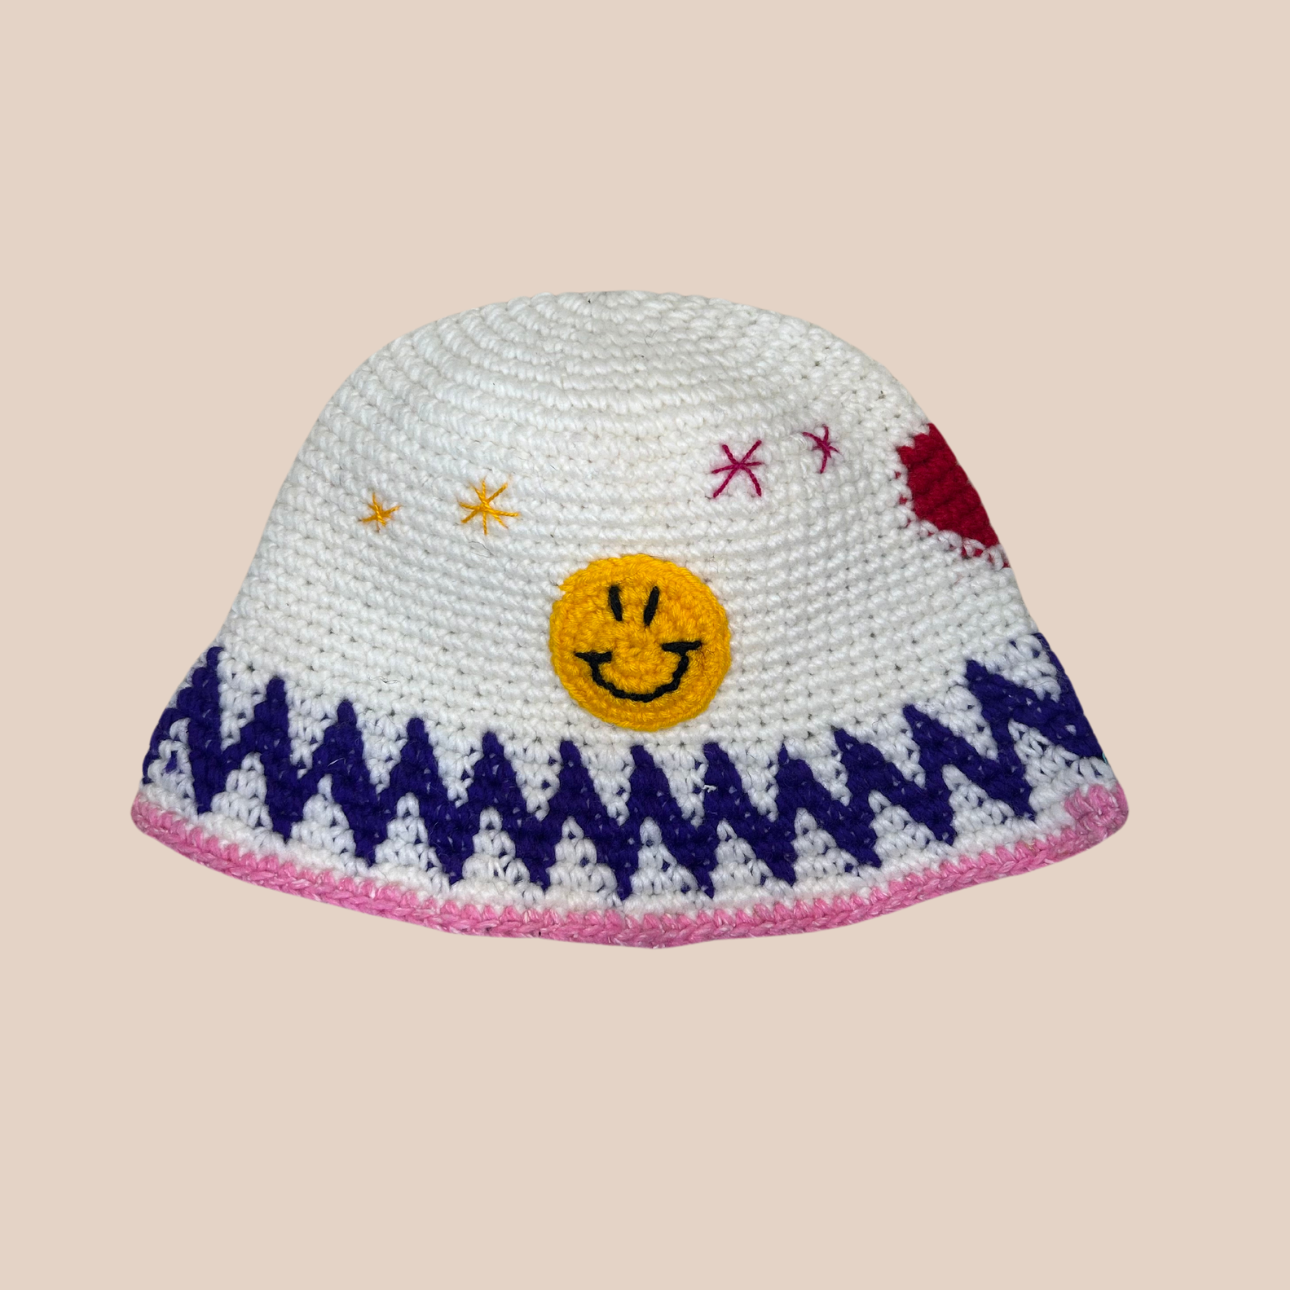 Un bucket hat crocheté en laine et acrylique, arborant des motifs aux couleurs vives et audacieuses